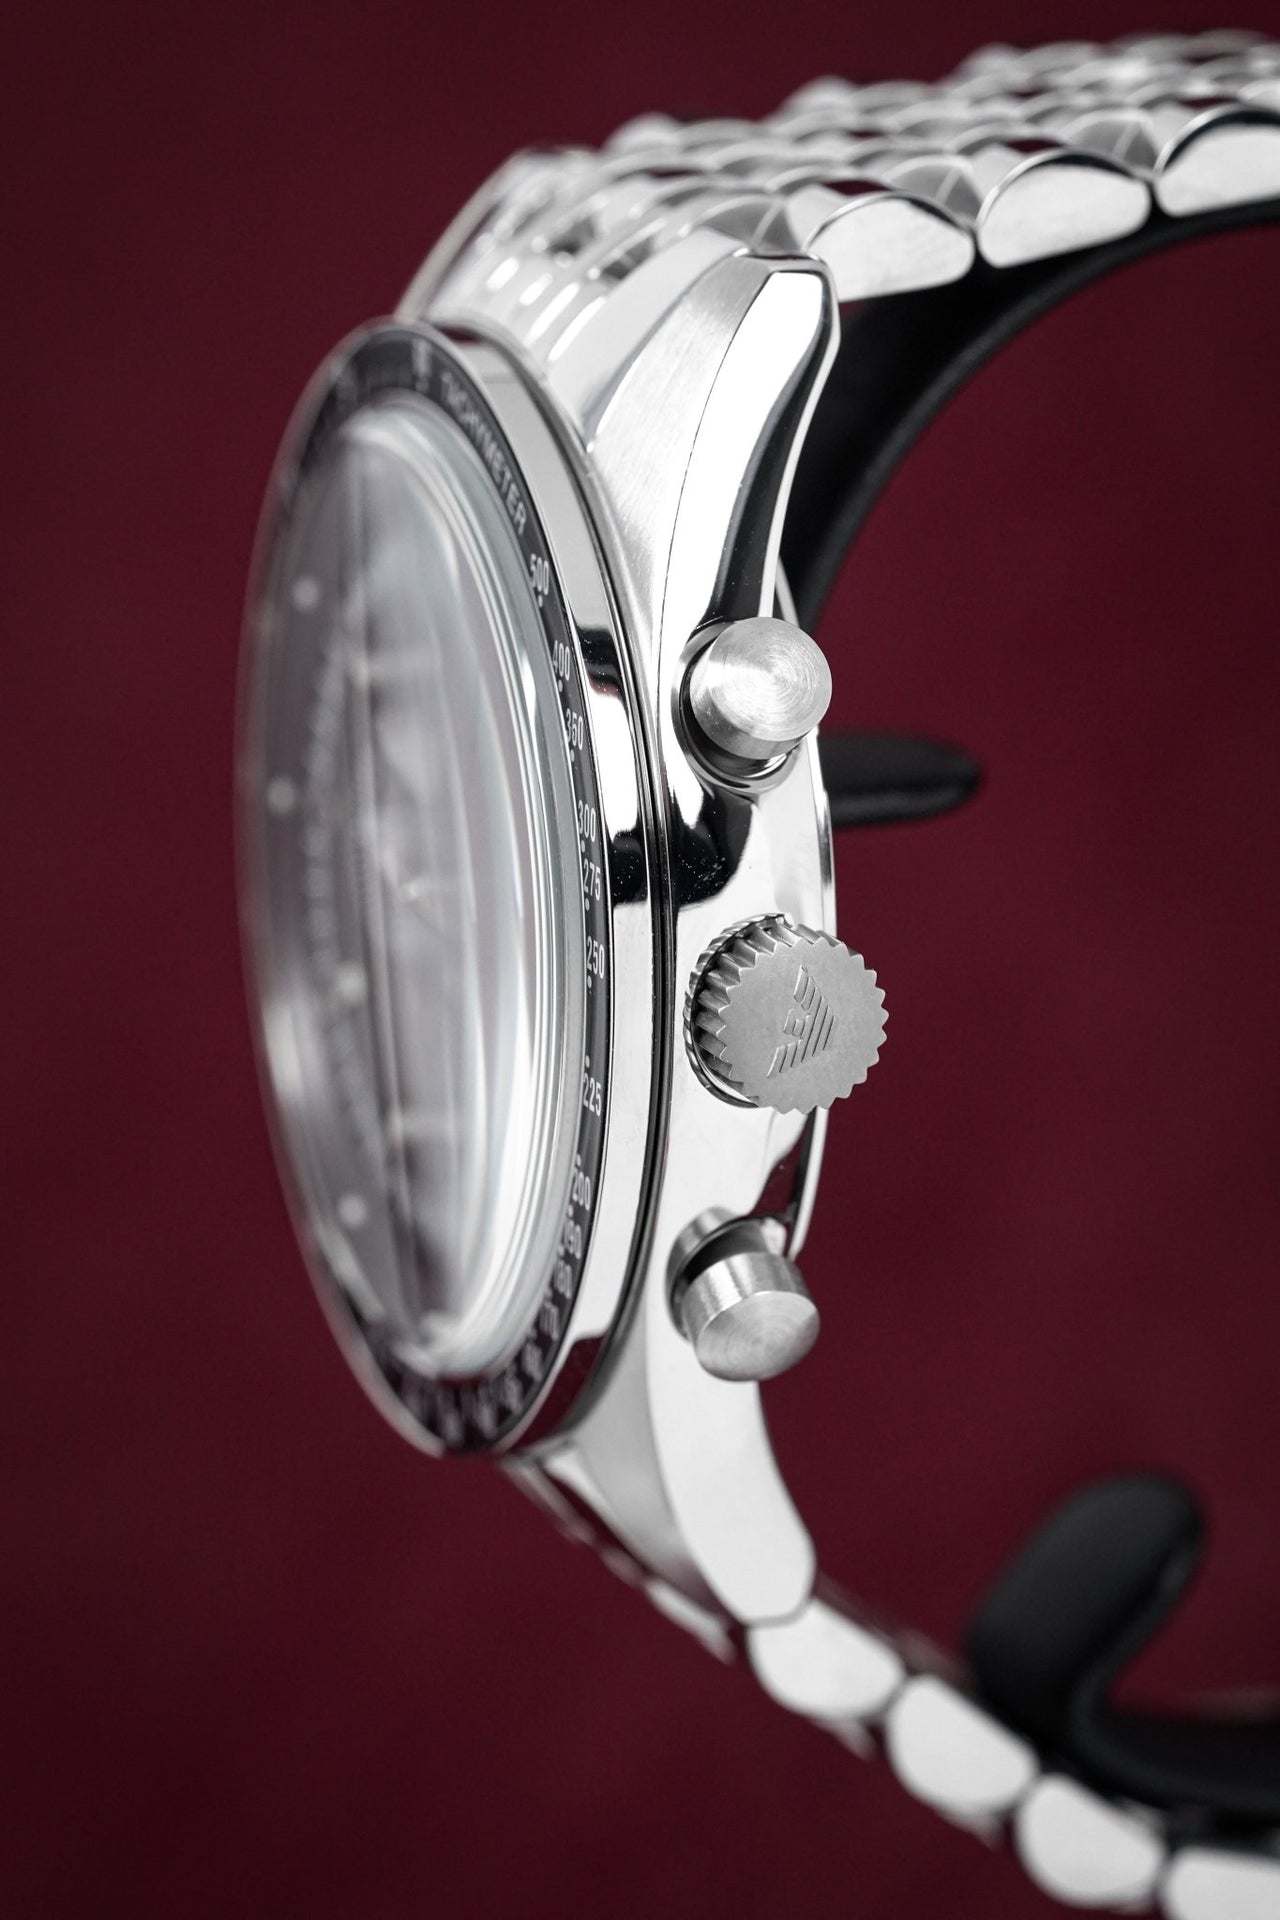 Emporio Armani Men's Tazio Chronograph Watch Steel AR5988 - Watches & Crystals